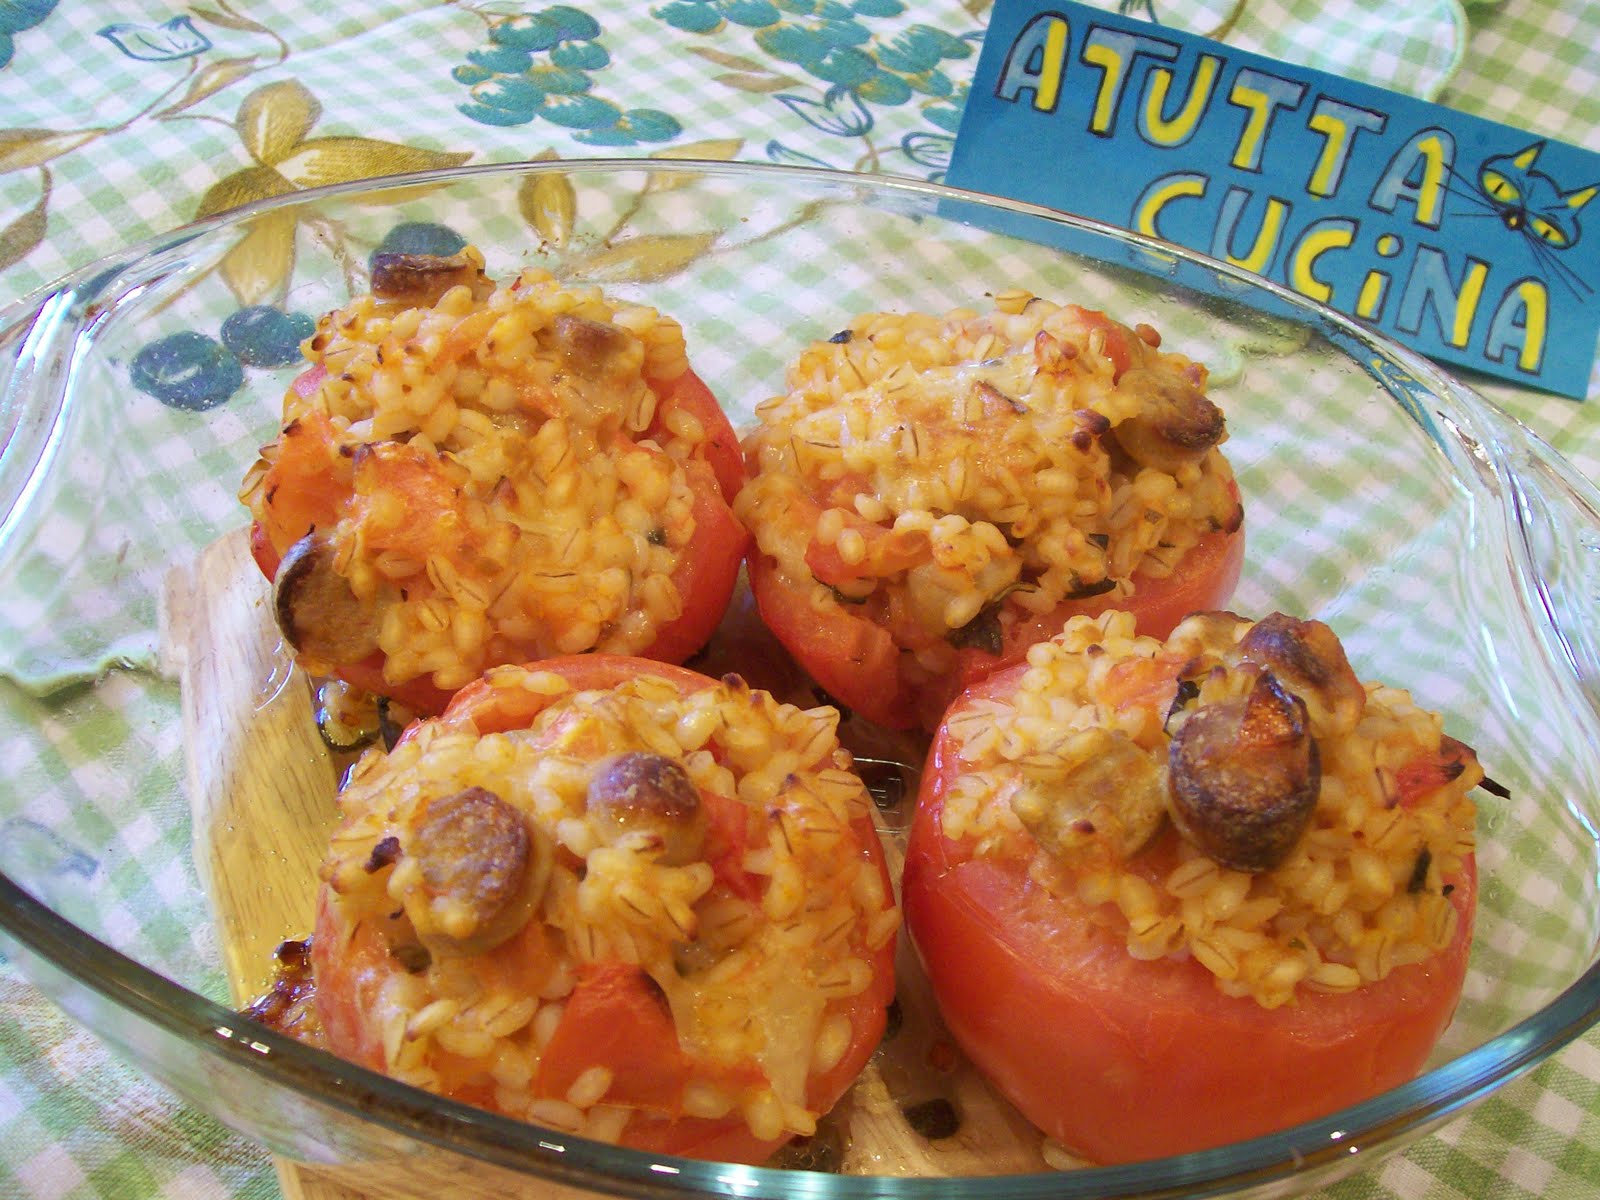 A tutta cucina pomodori ripieni di orzo e wurstel for Cucinare wurstel